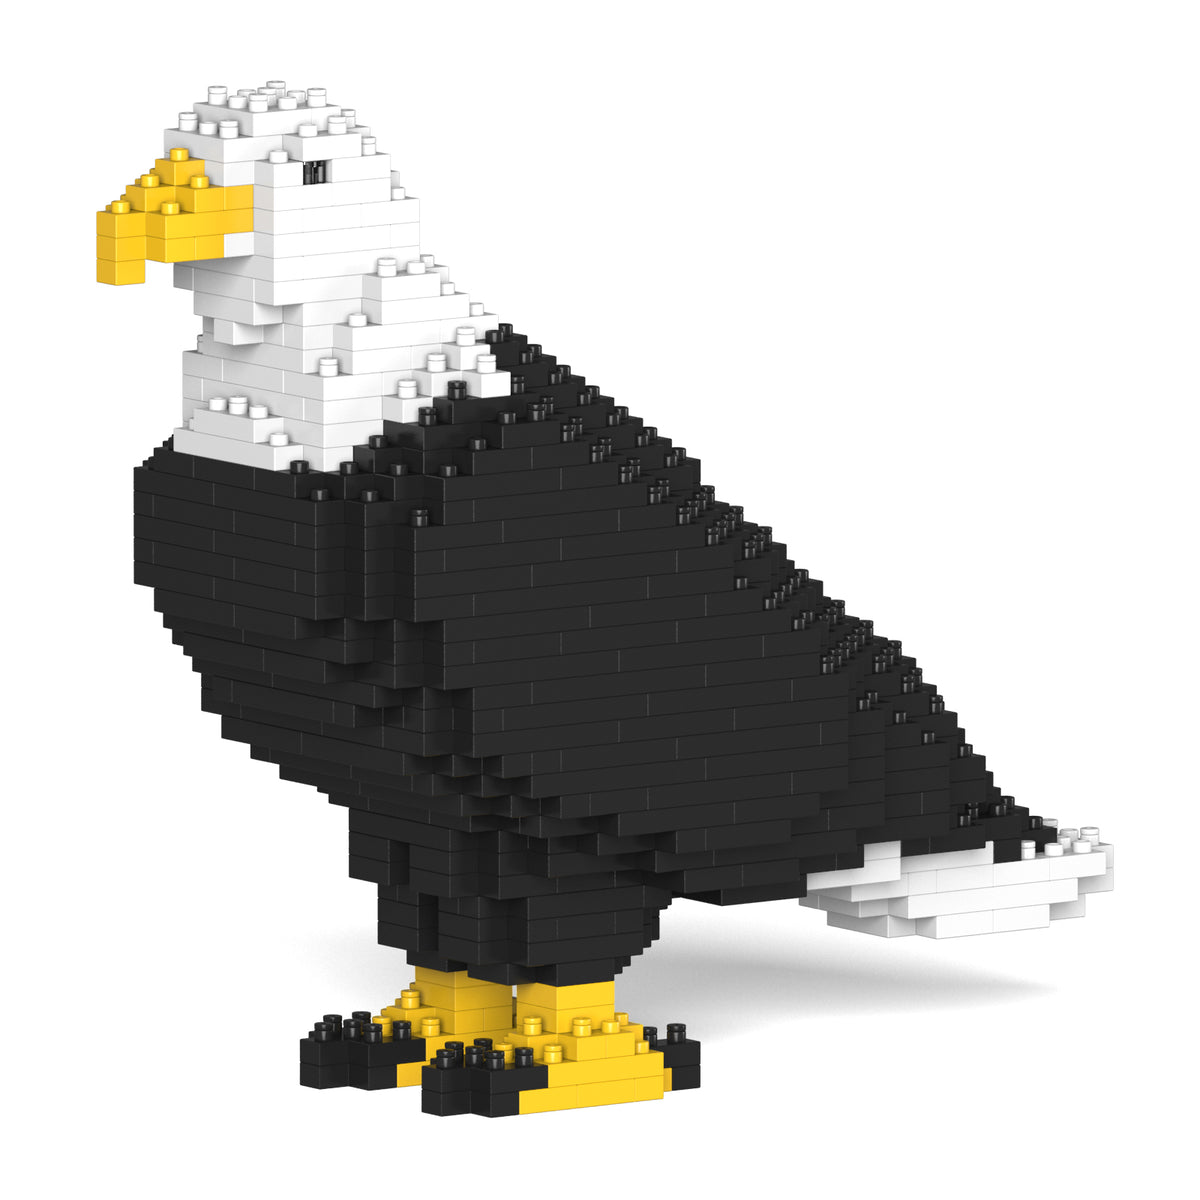 Jekca - Bald Eagle - Small (01S)